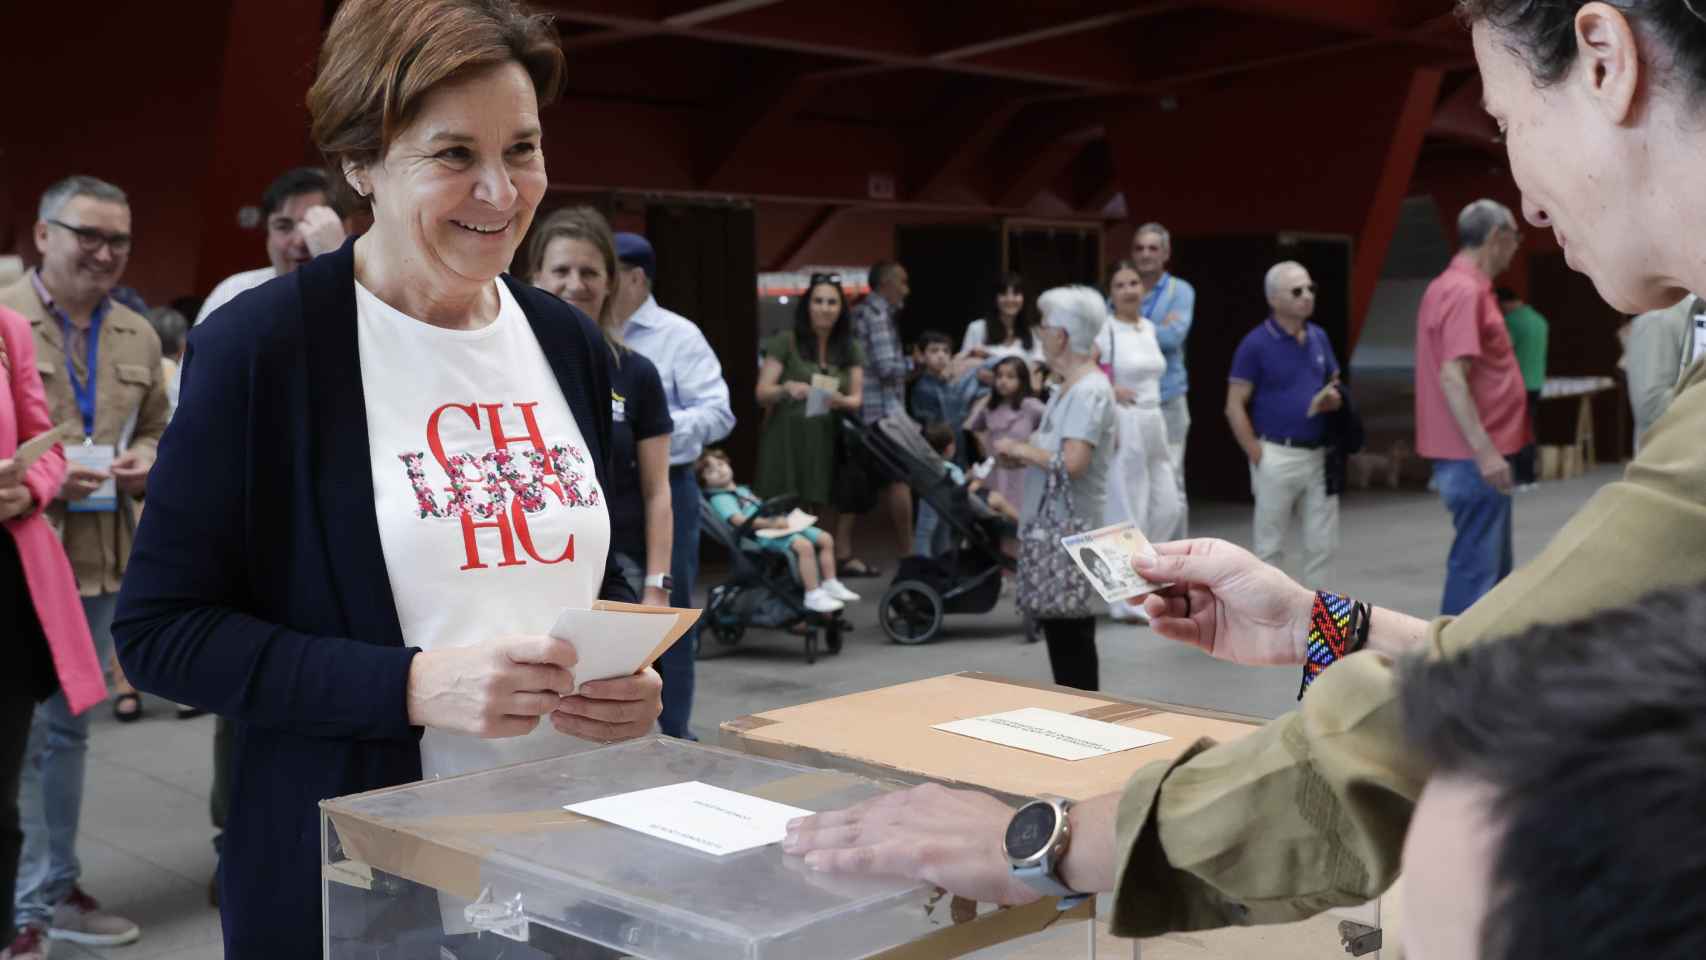 Carmen Moriyón, previsiblemente, futura alcaldesa de Gijón, vota el pasado 28-M.